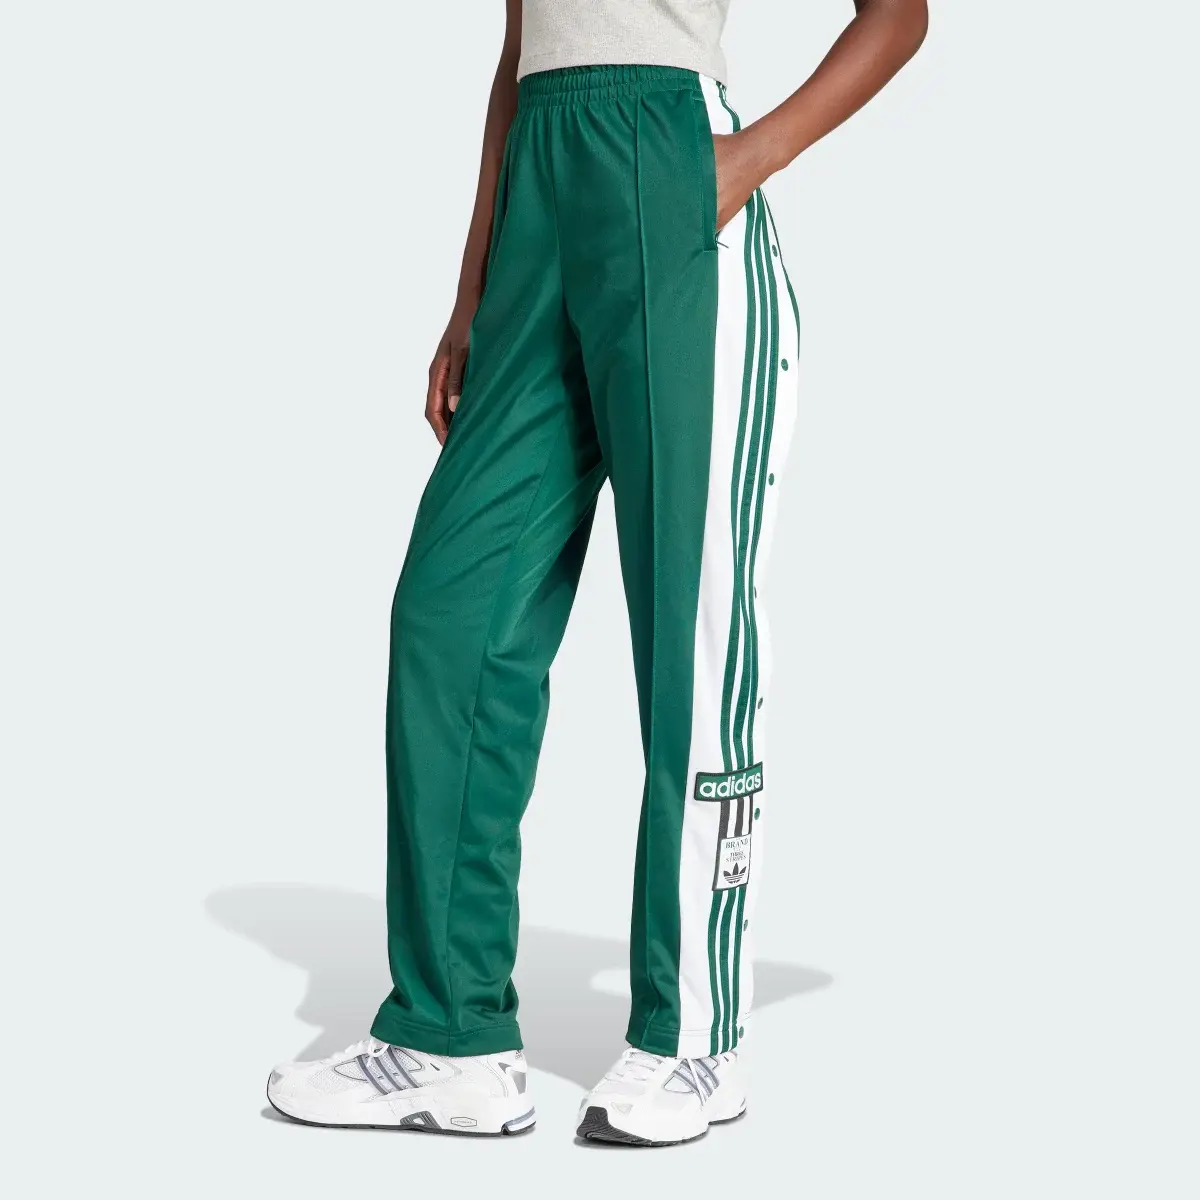 Adidas Adibreak Pants. 1